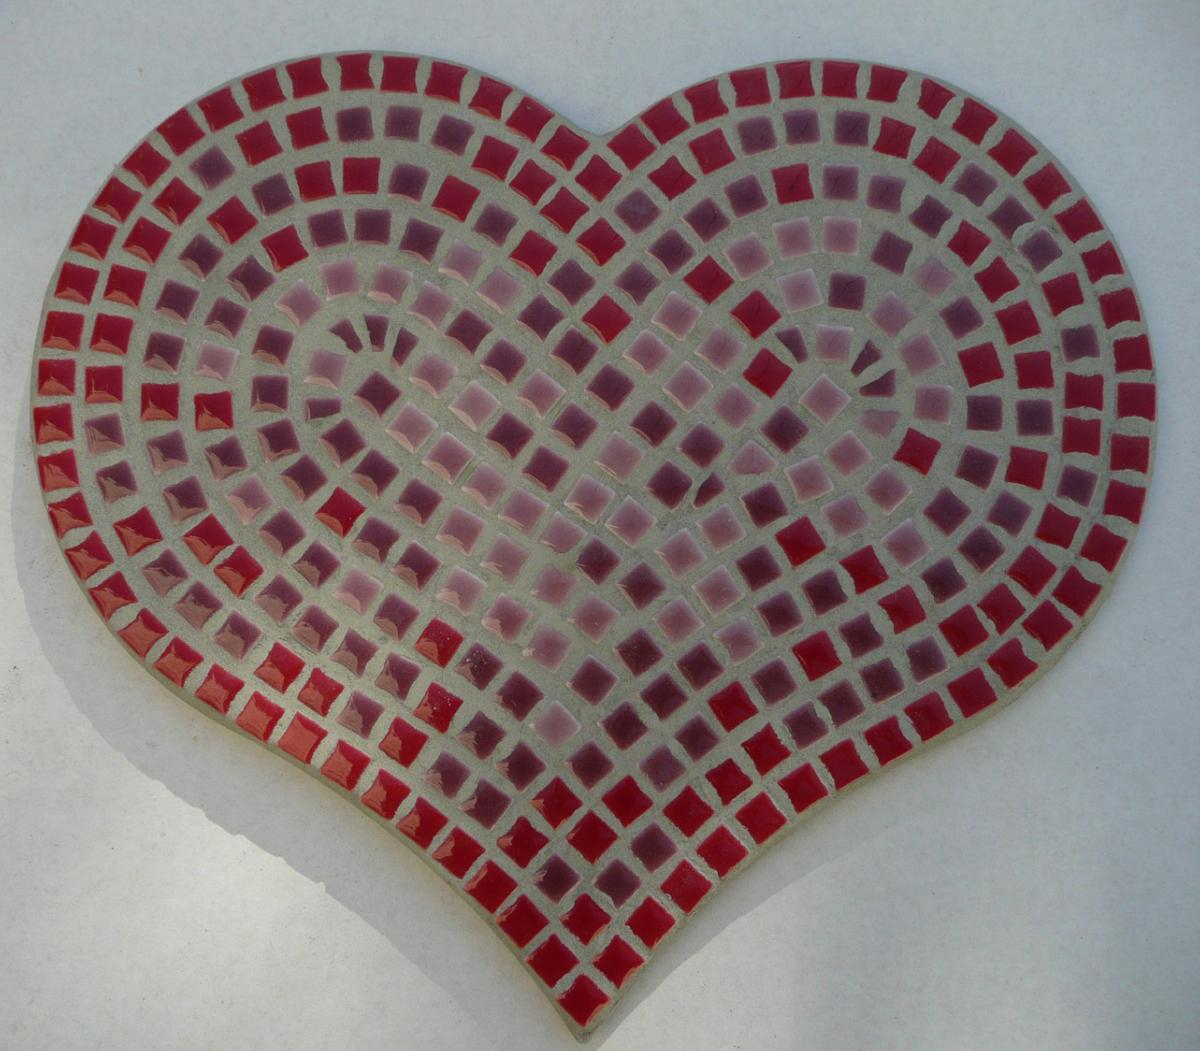 Coeur Support Mosaique - Coeur 26 Cm Pour Mosaique De concernant Support Pour Mosaique